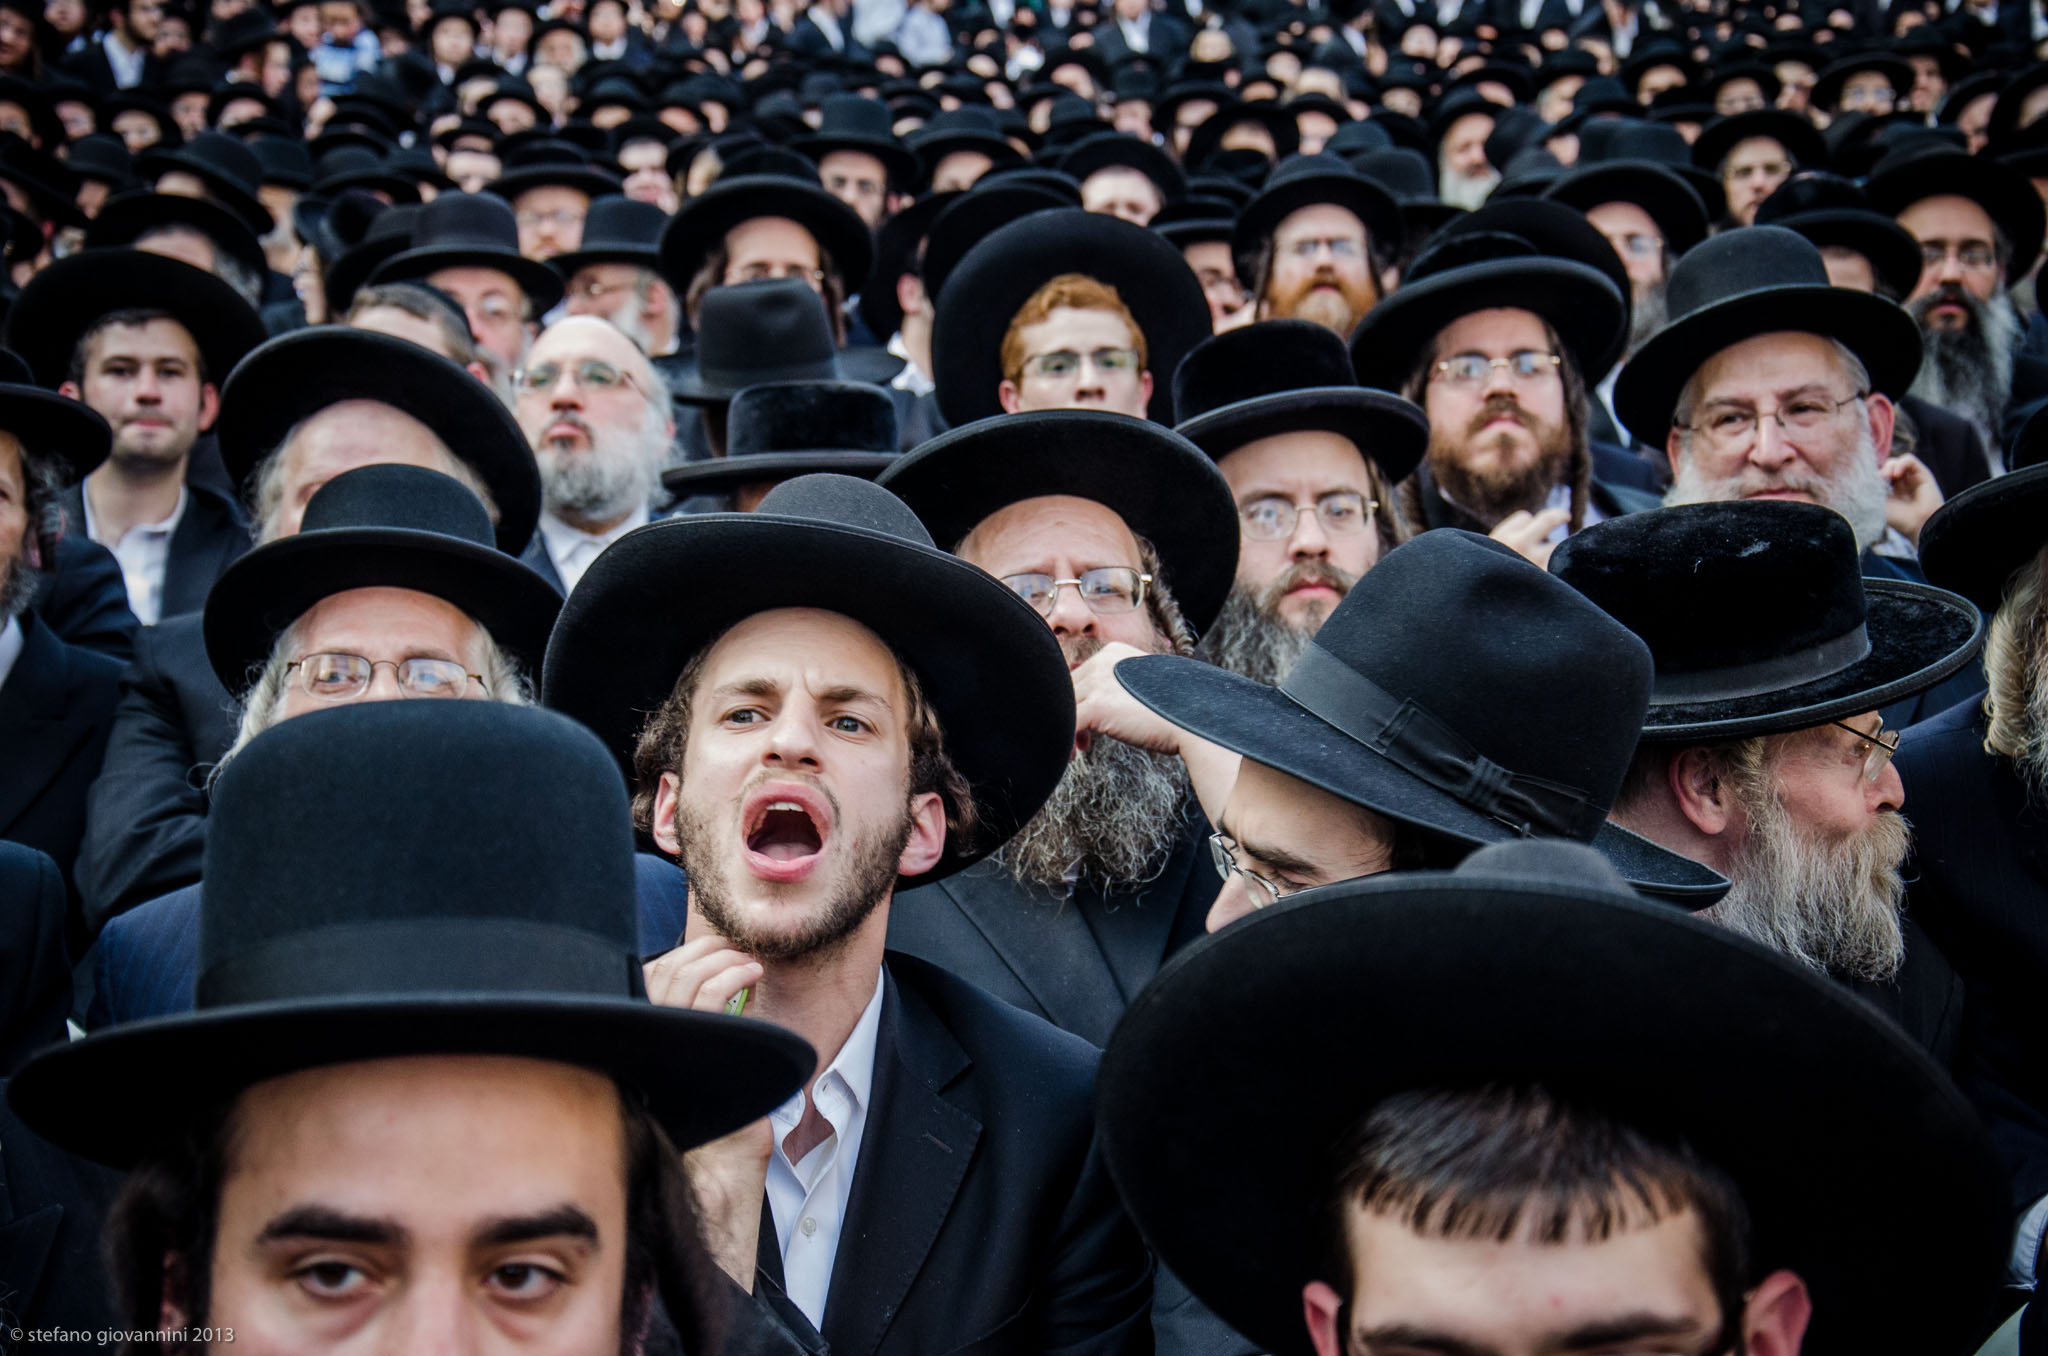  يهود الحريديم يحتجون على قانون التجنيد